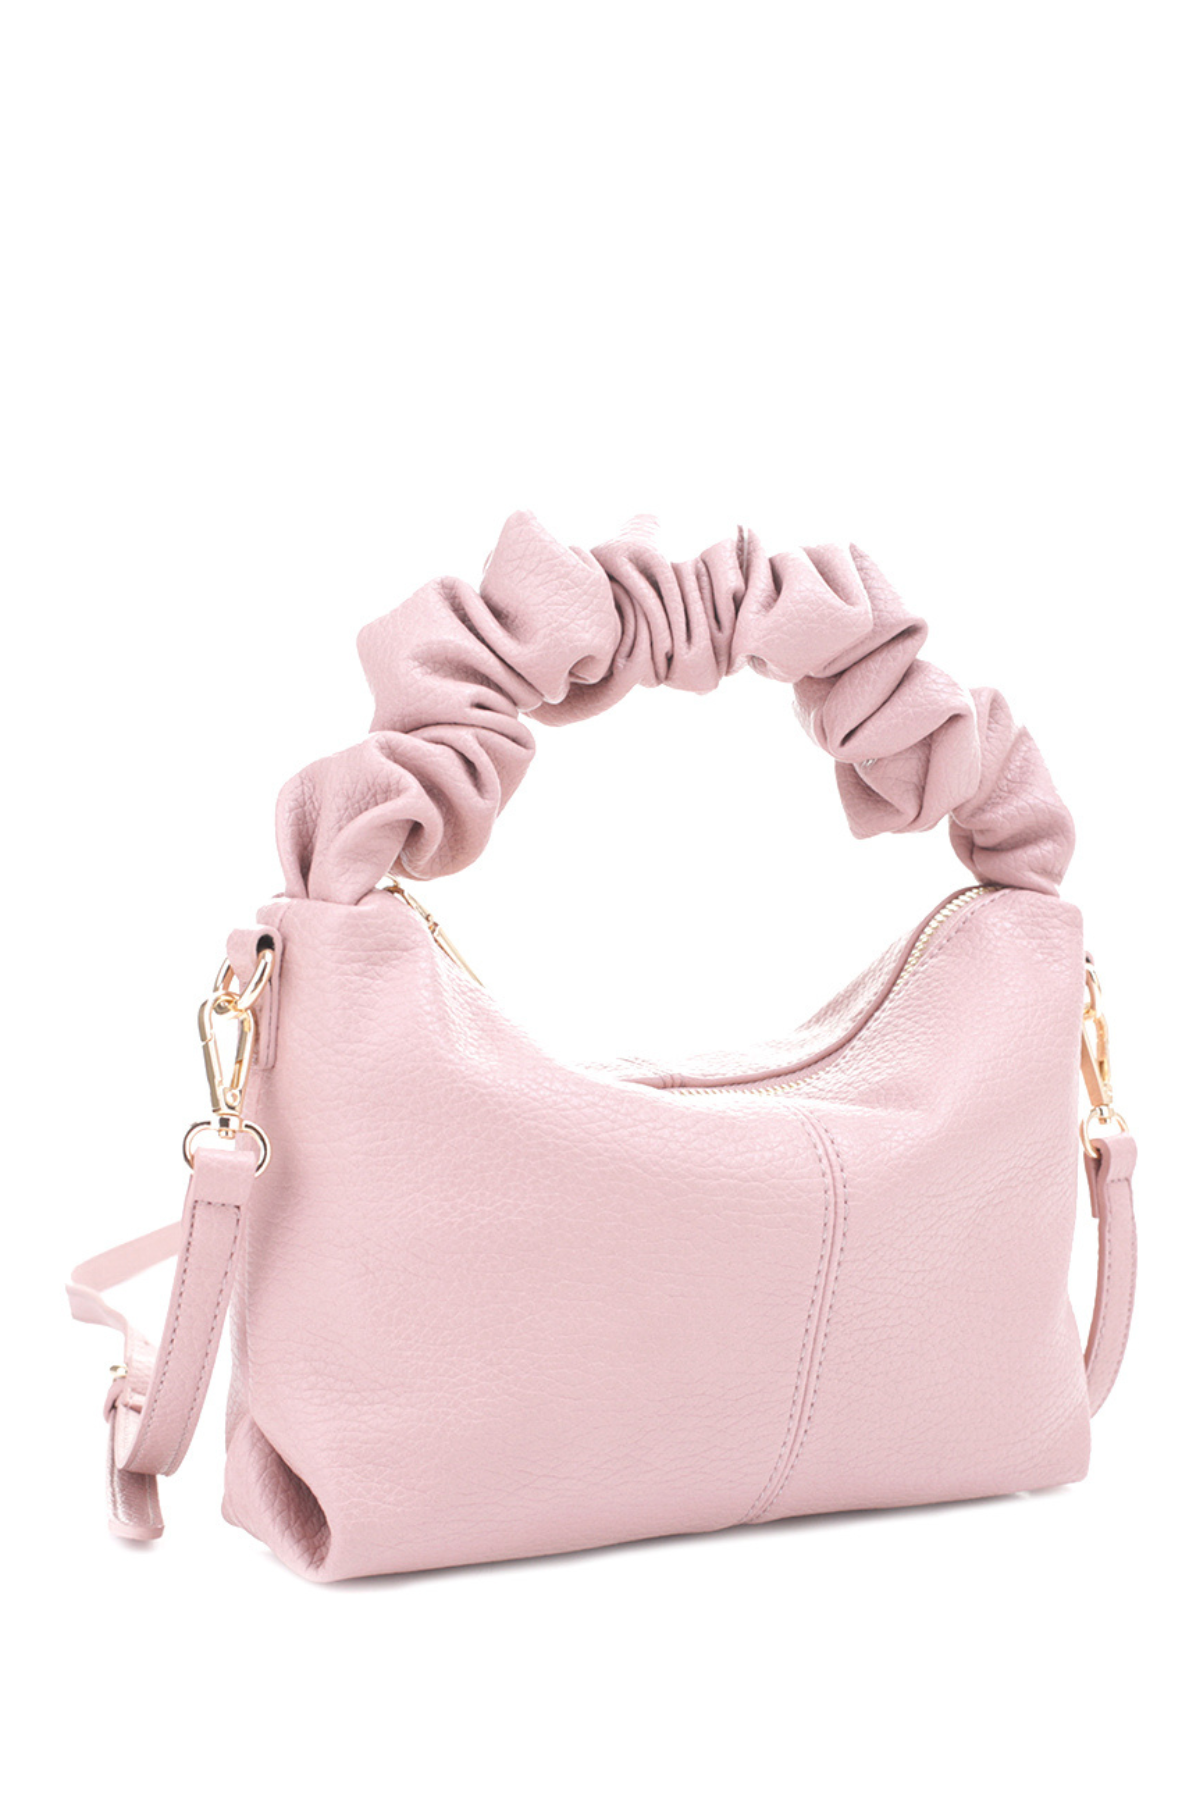 Kelsie Wrinkle Handle Bag